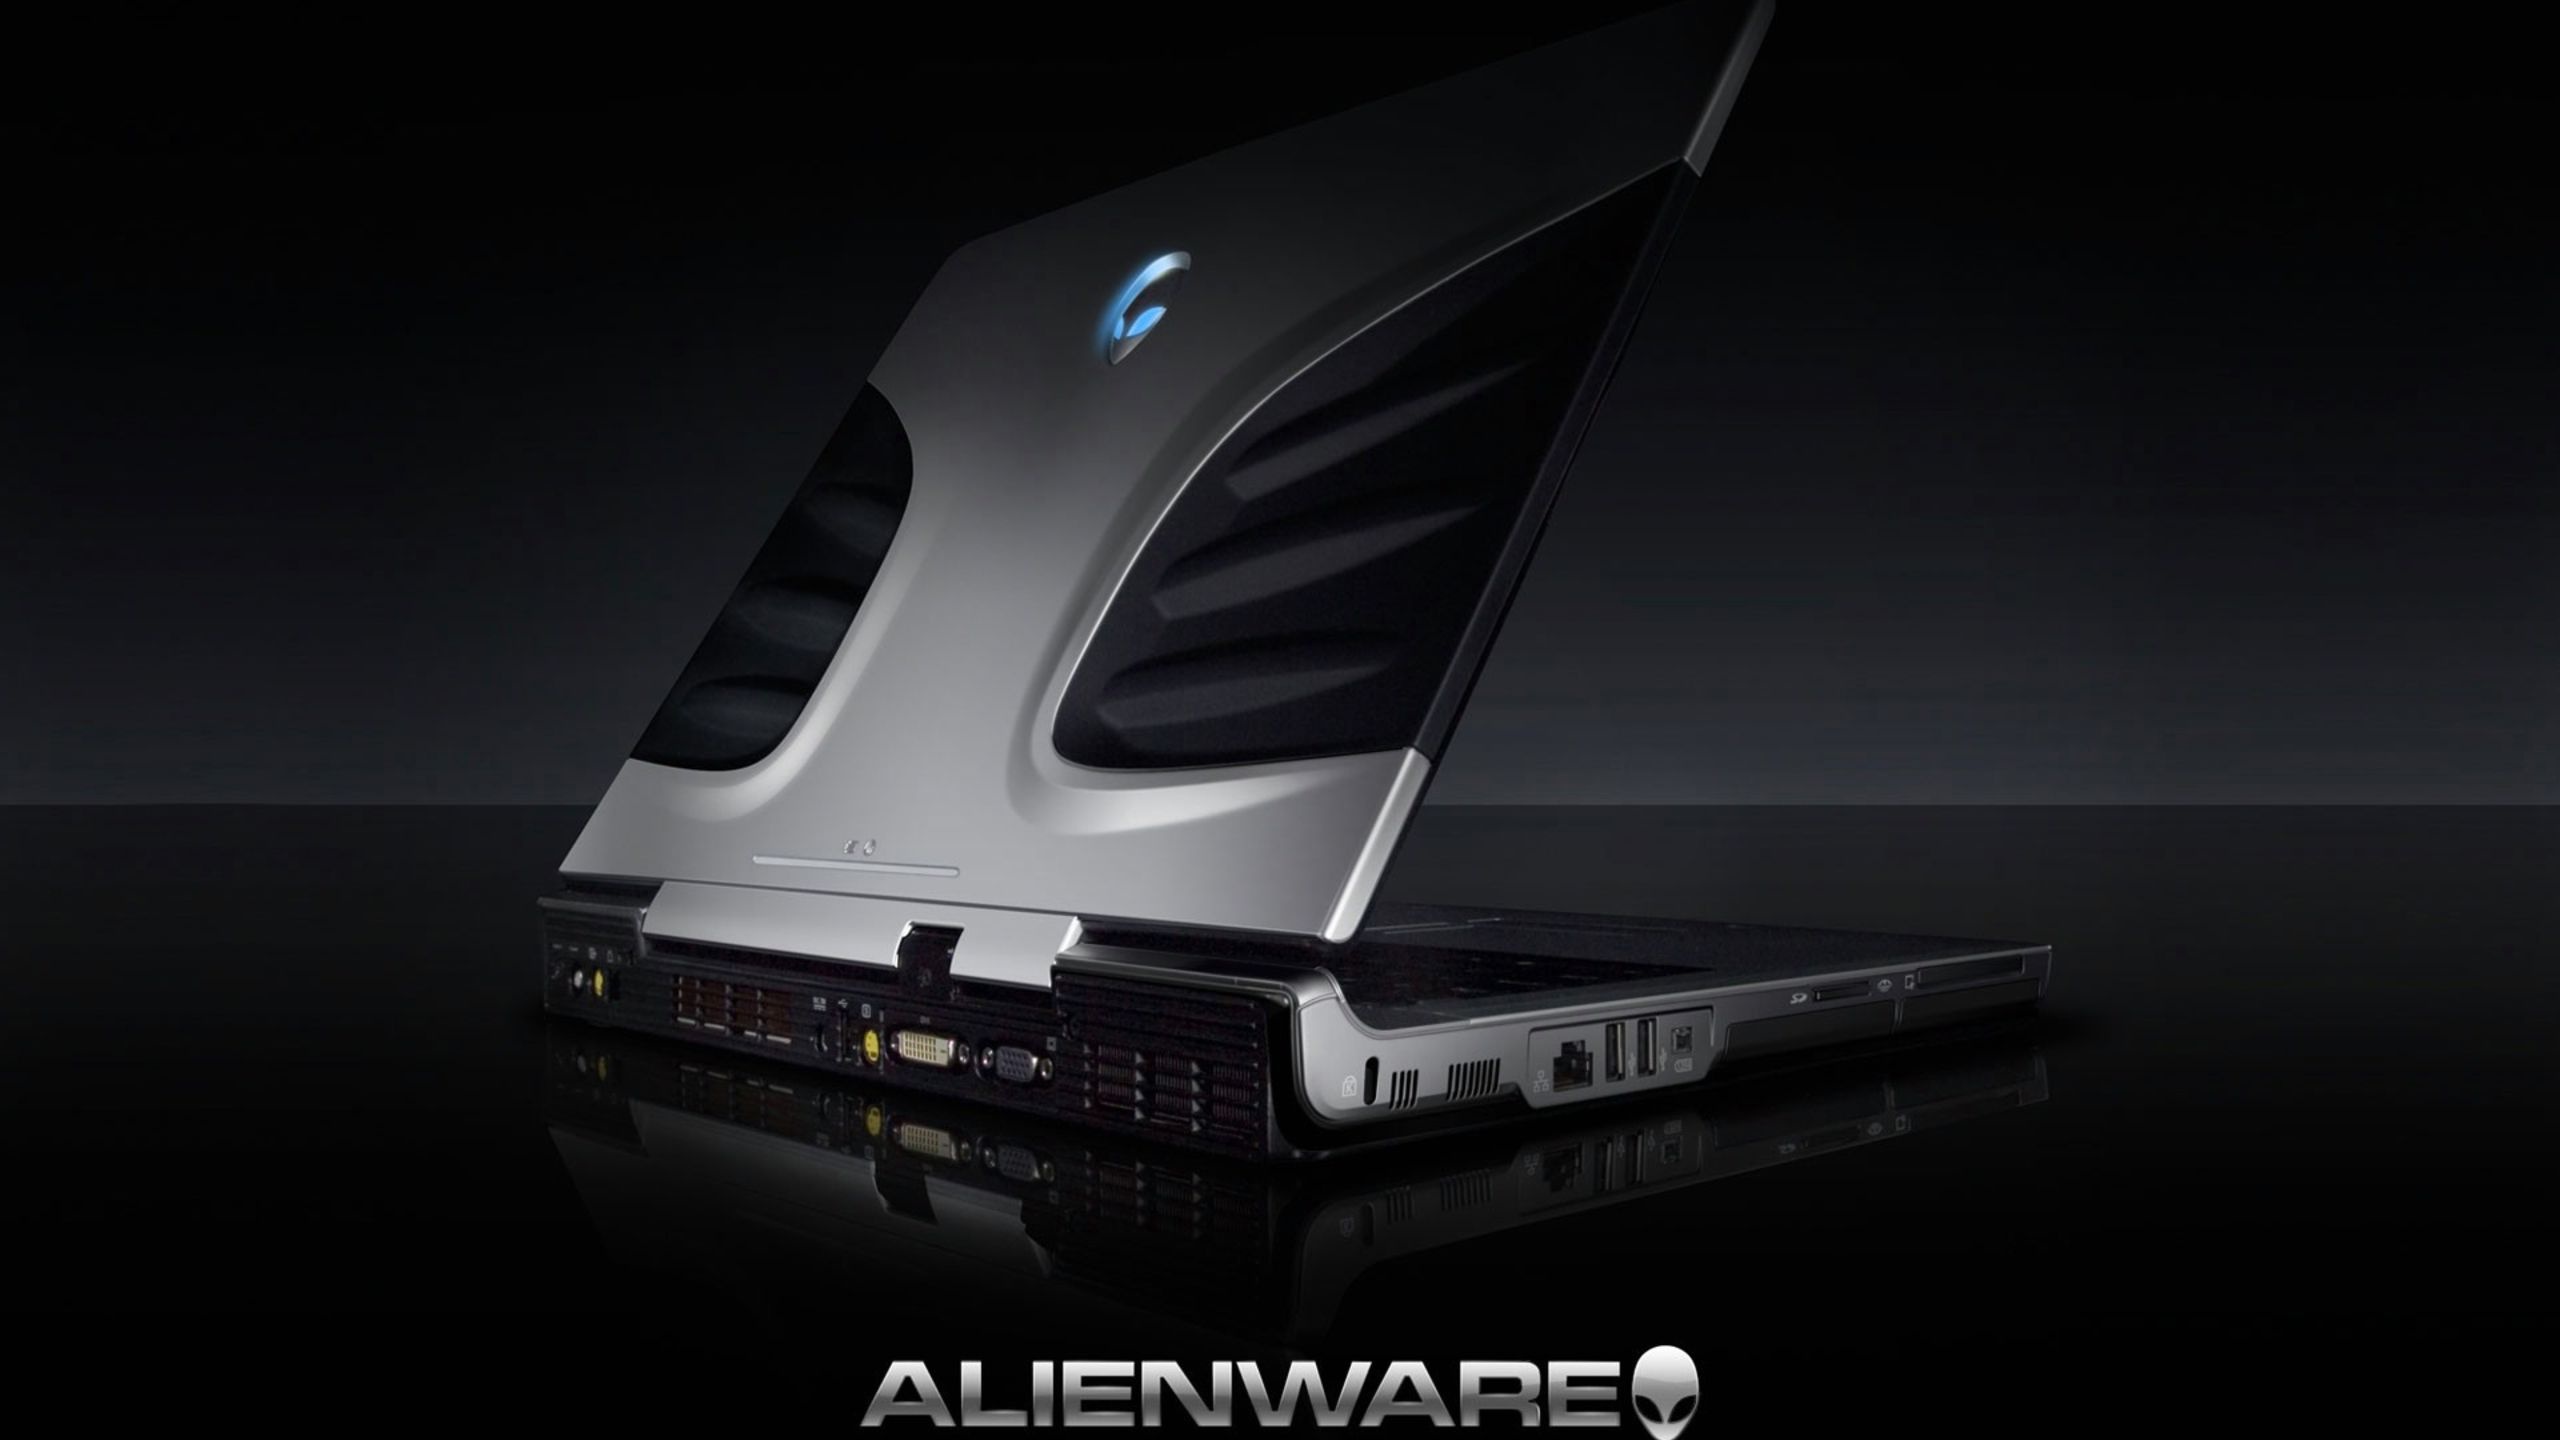 Alienware Brand Notebook Computer